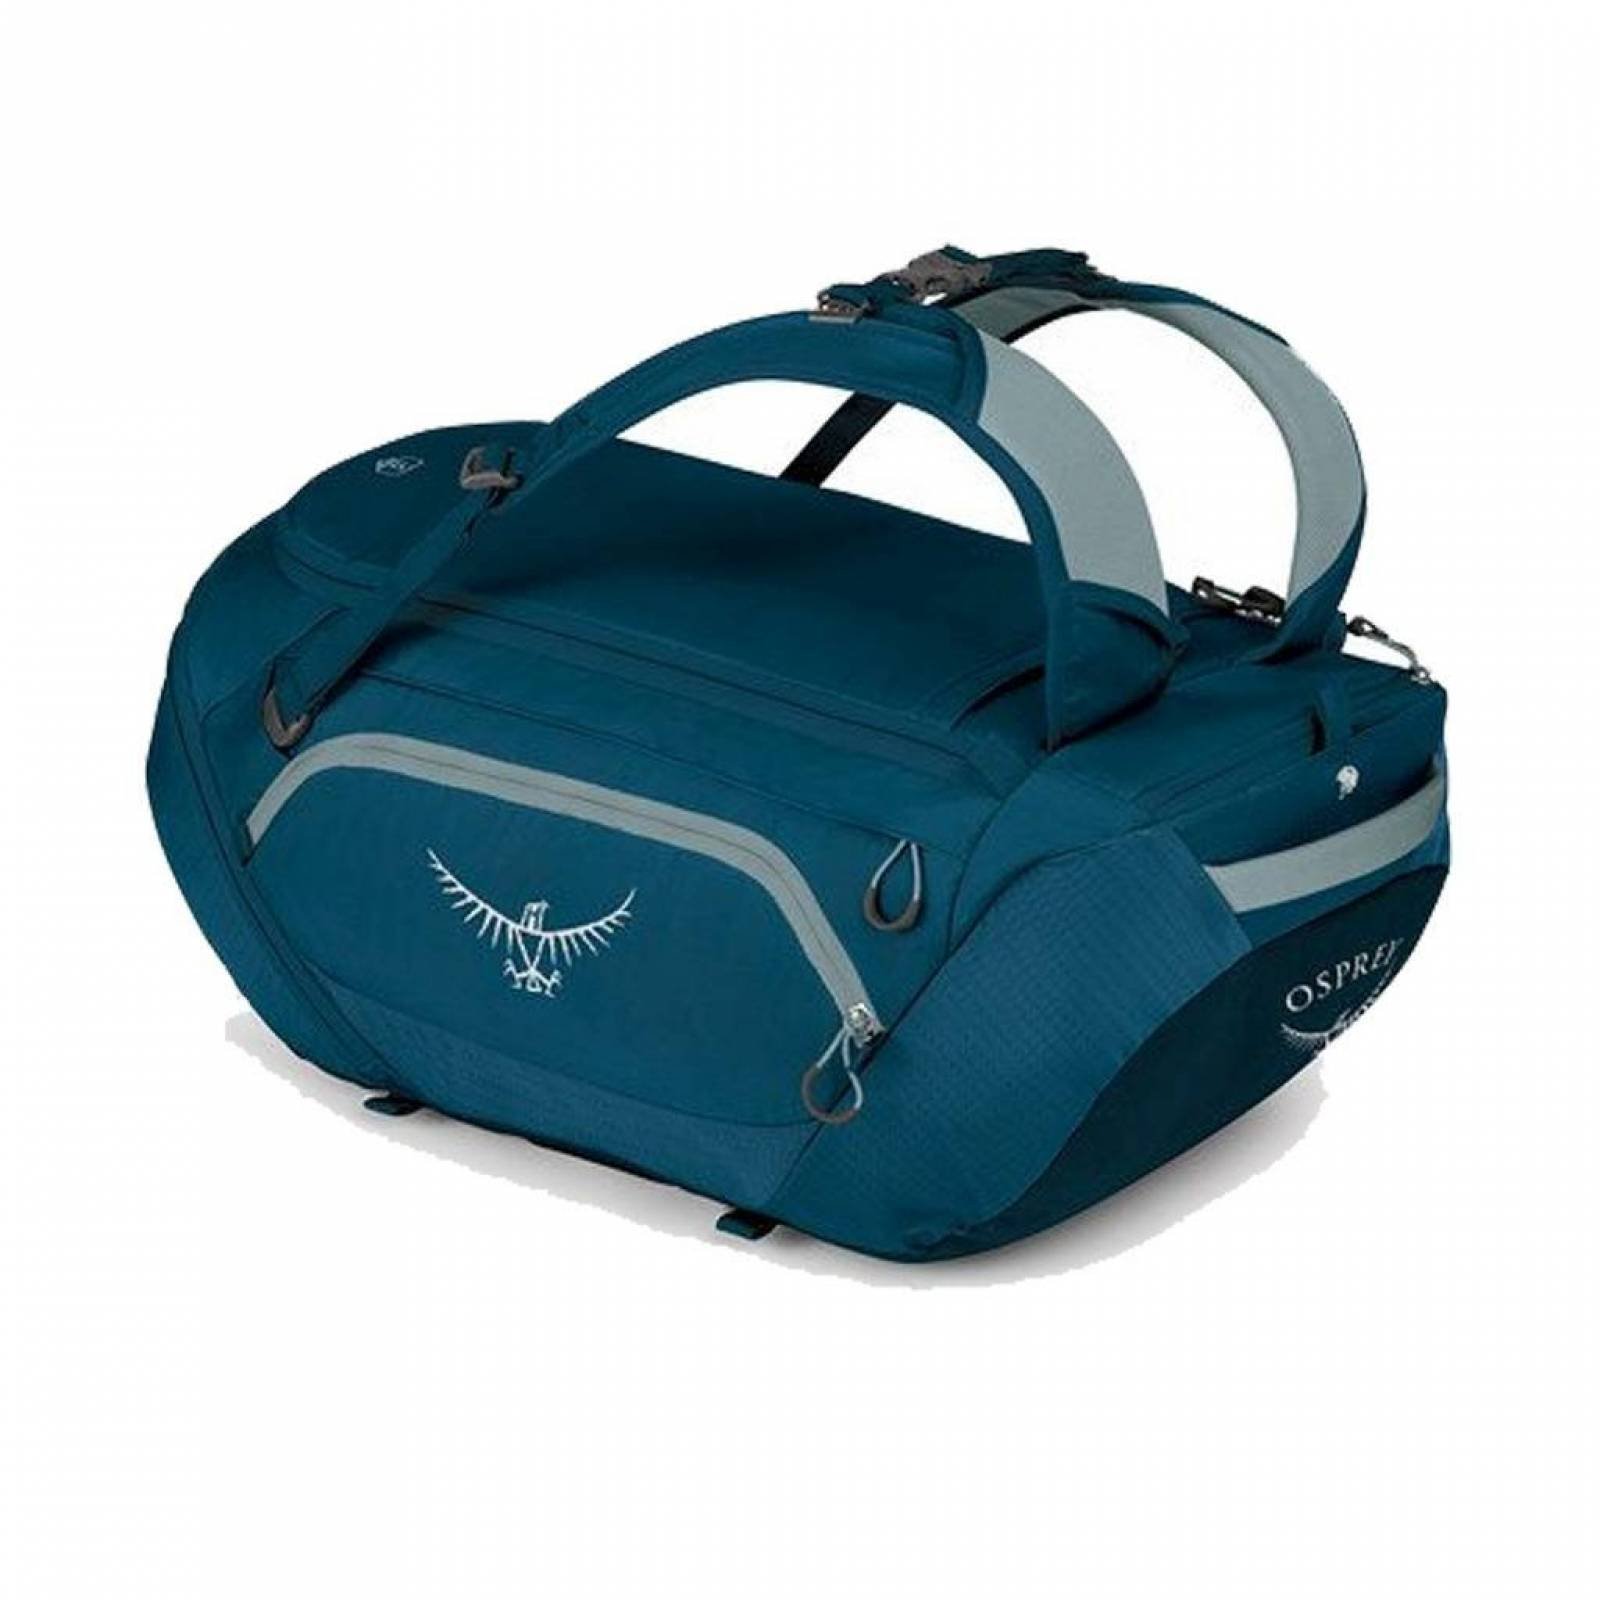 Mochila Backpack SnowKit Duffel Color Azul Osprey Packs